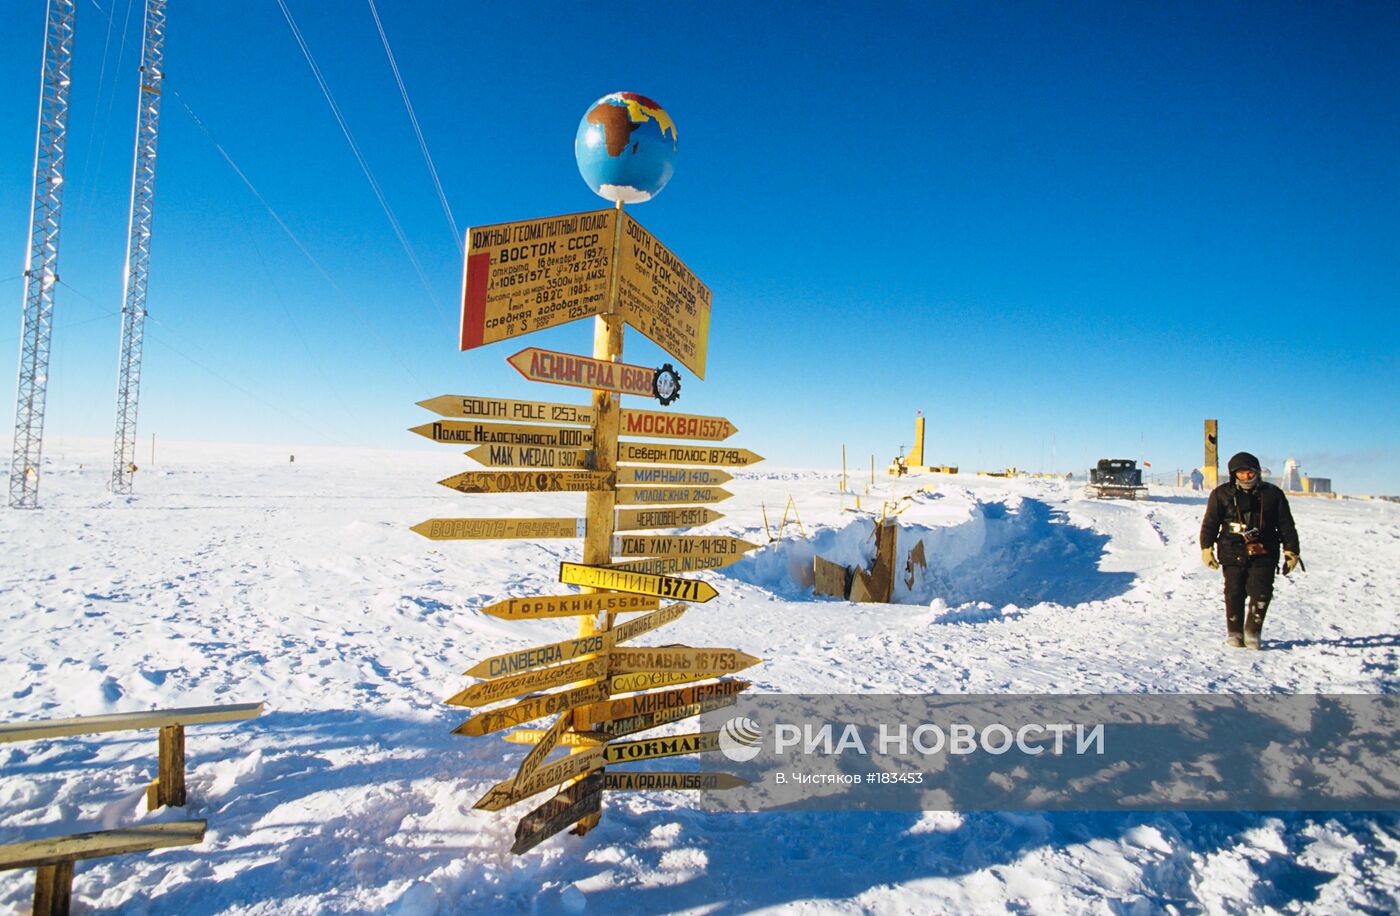 Советская научно-исследовательская станция "Восток" в Антарктиде